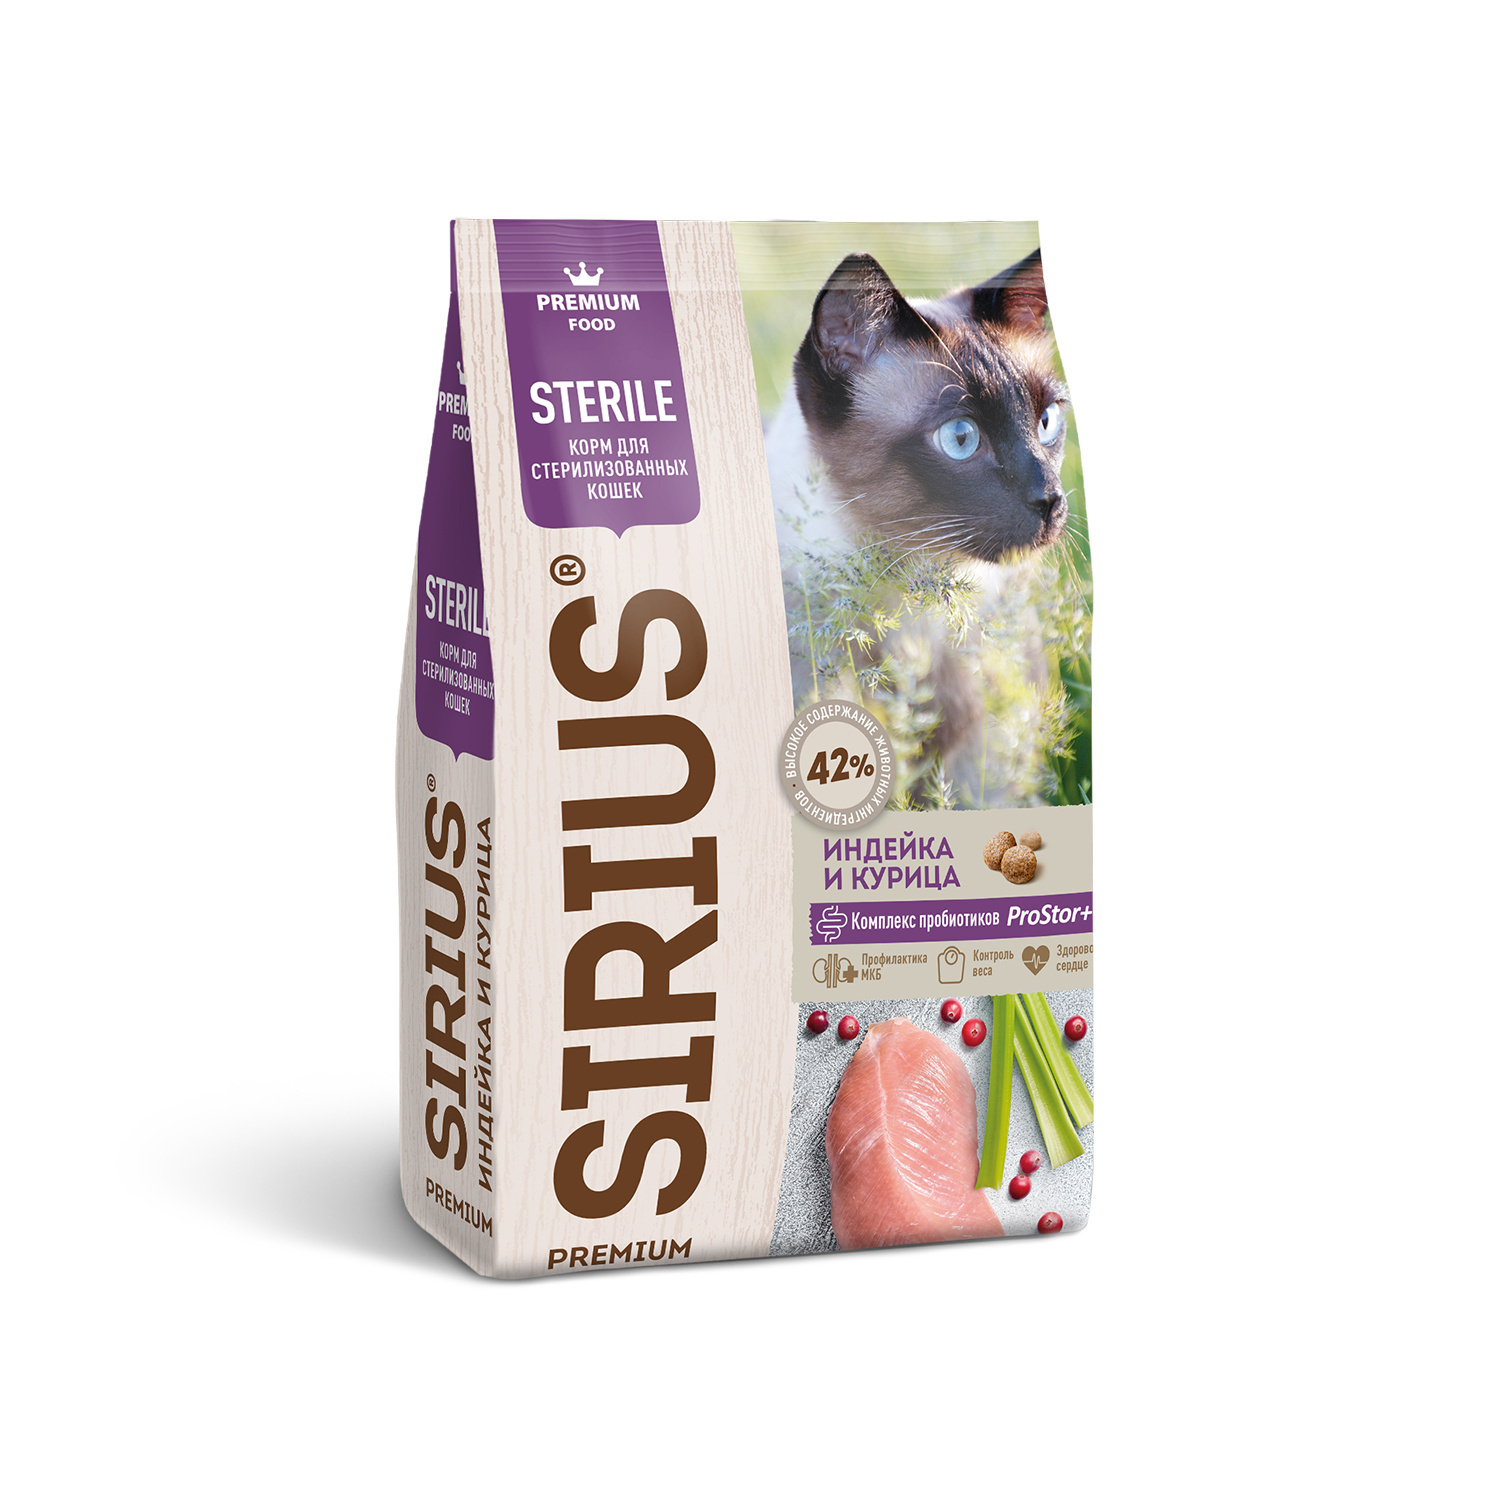 Sirius сухой корм для стерилизованных кошек, индейка и курица (400 г) Sirius сухой корм для стерилизованных кошек, индейка и курица (400 г) - фото 1